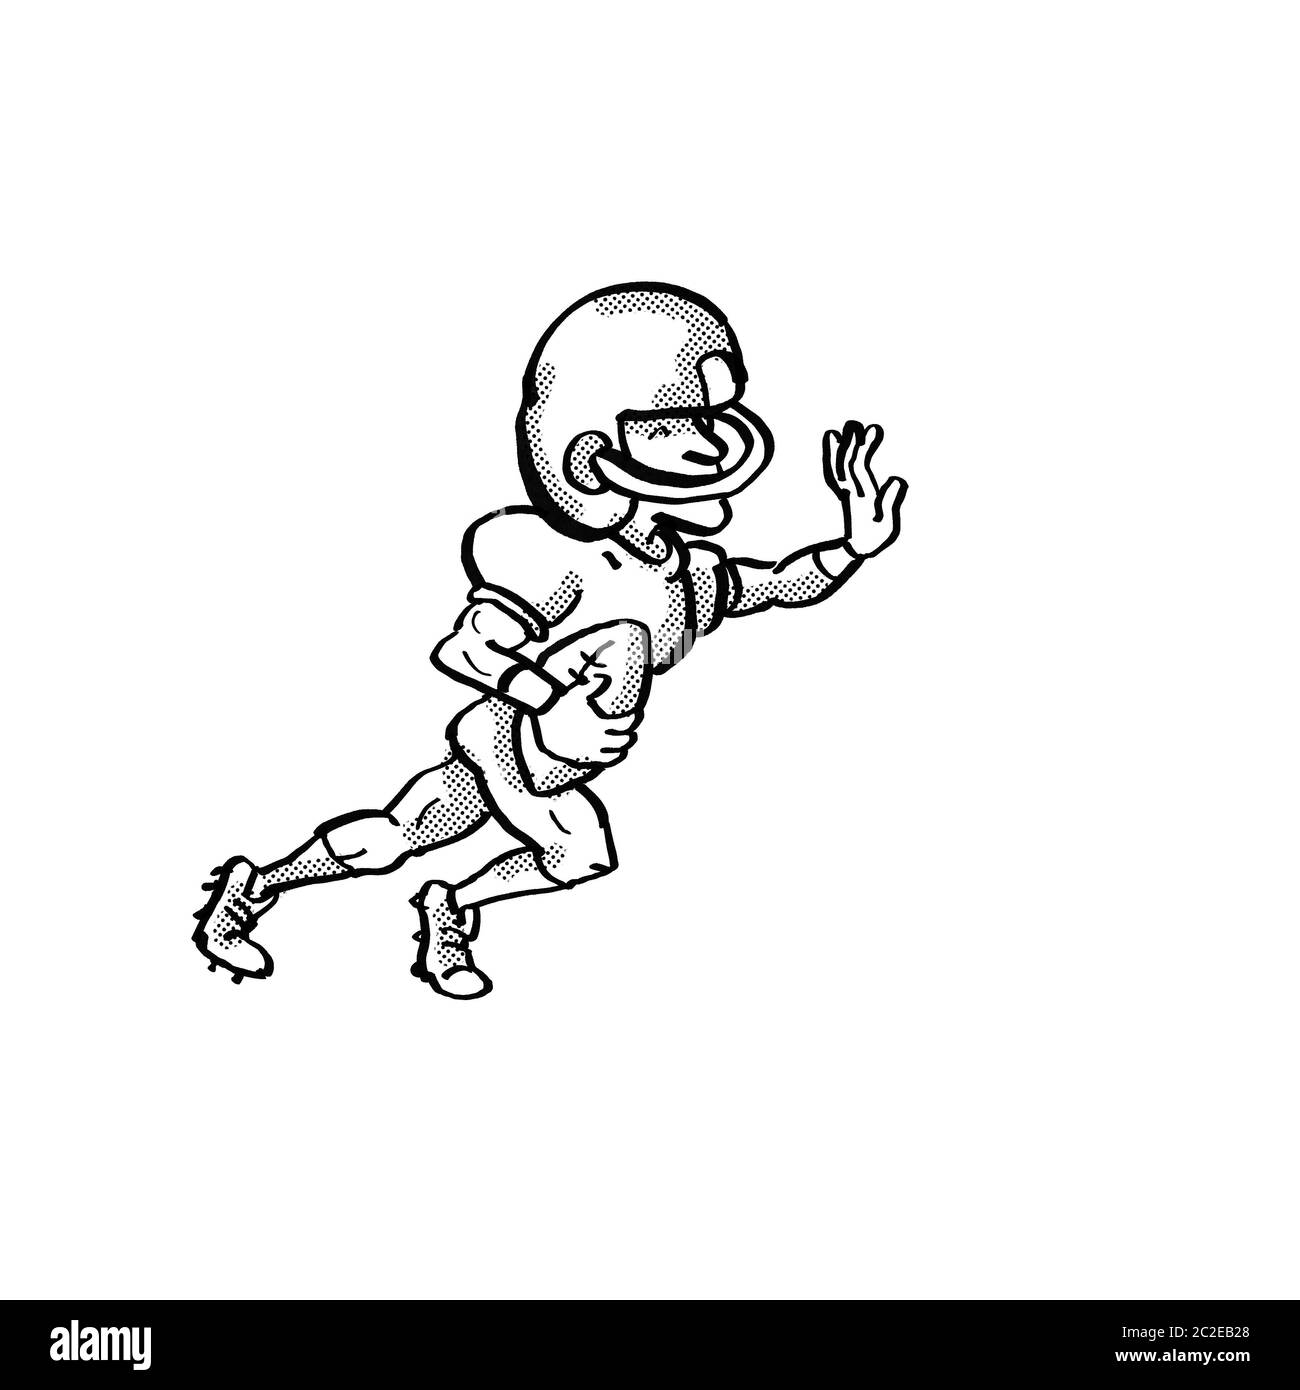 Cartoon style illustration d'un joueur de football américain en noir et blanc sur fond blanc isolé Banque D'Images